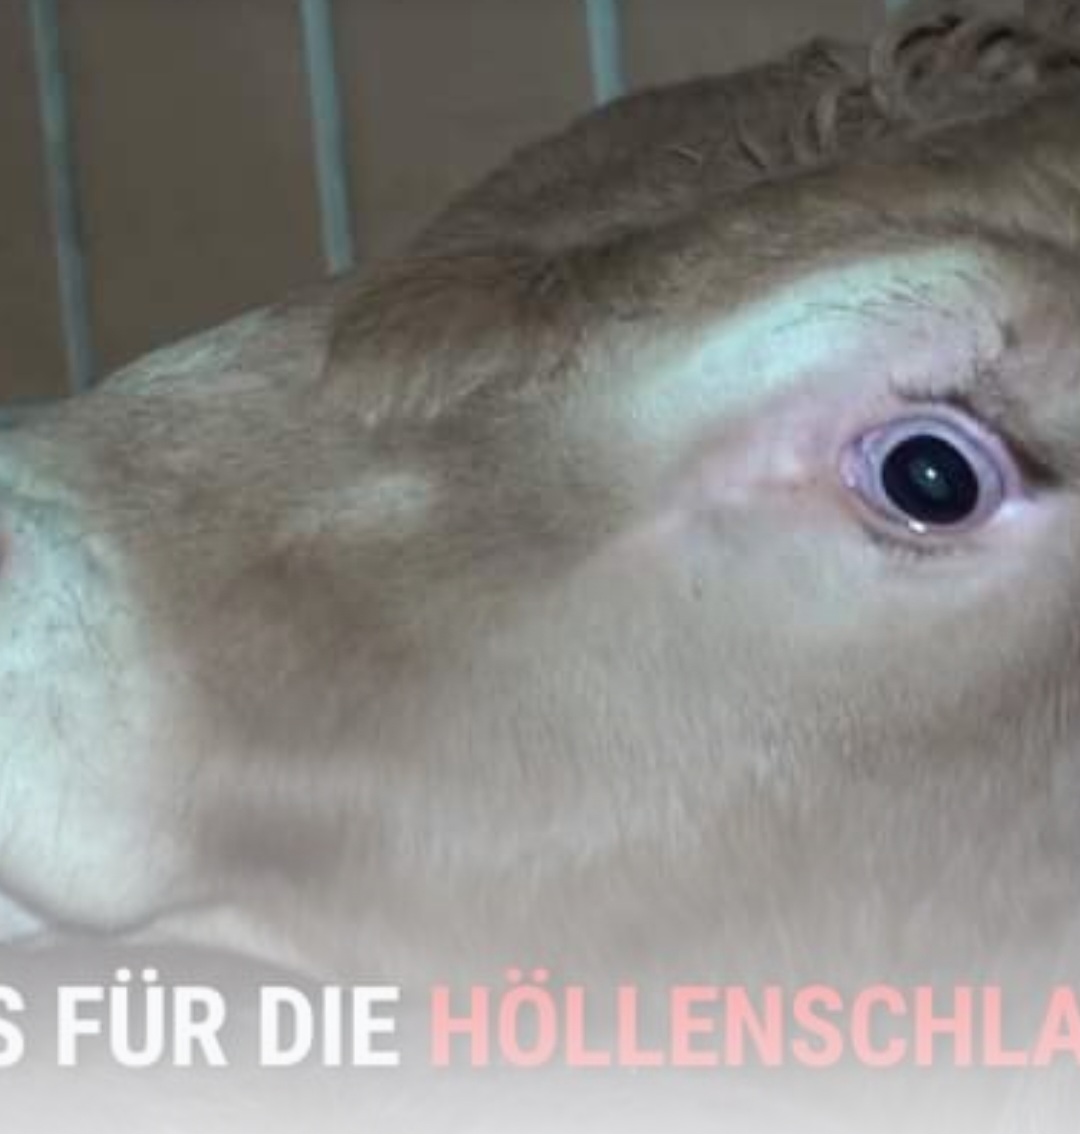 190 Tiere geschächtet – Demo vor Gericht: Tierschützer fordern Gefängnis für „Höllenschlachter von Selm“